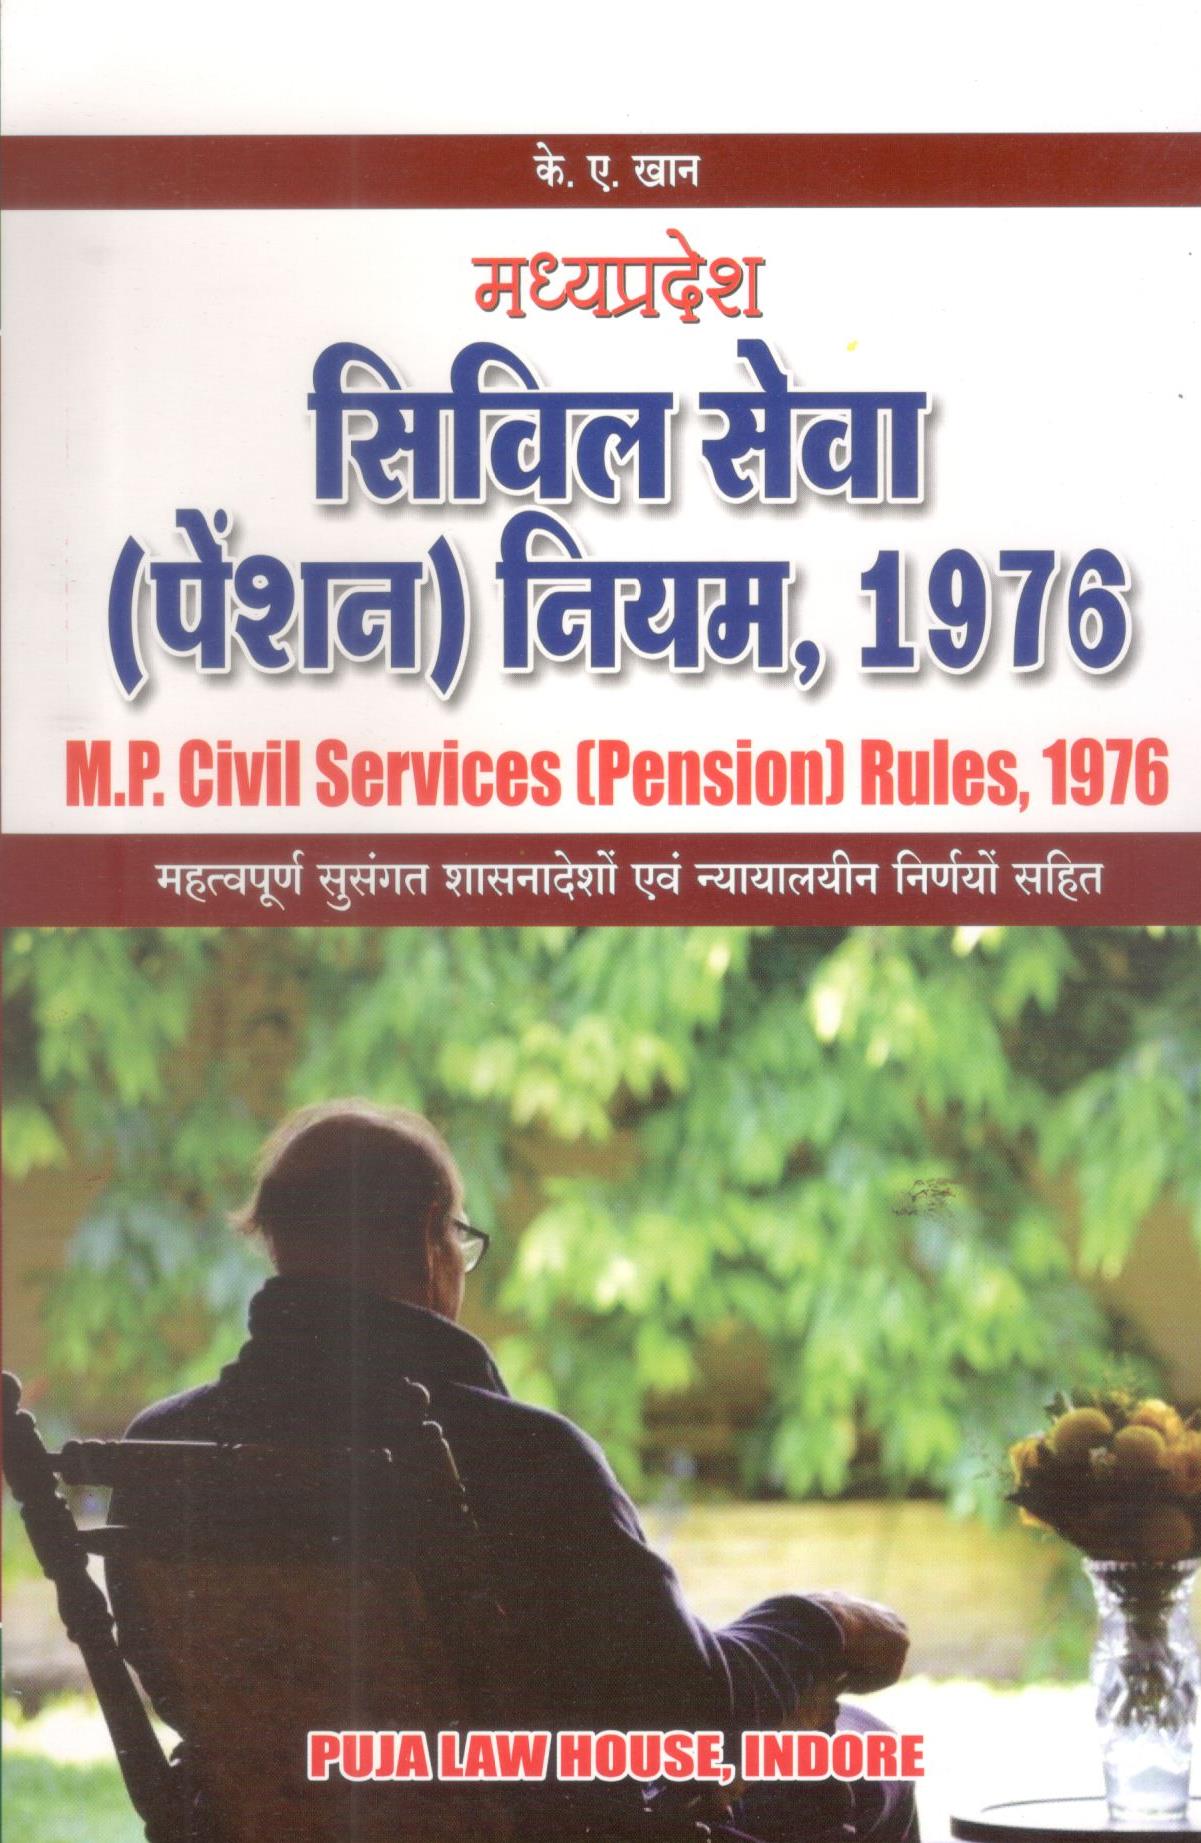 के.ए. खान -  मध्य प्रदेश सिविल सेवा (पेंशन) नियम, 1976 / Madhya Pradesh Civil Services (Pension) Rules, 1976